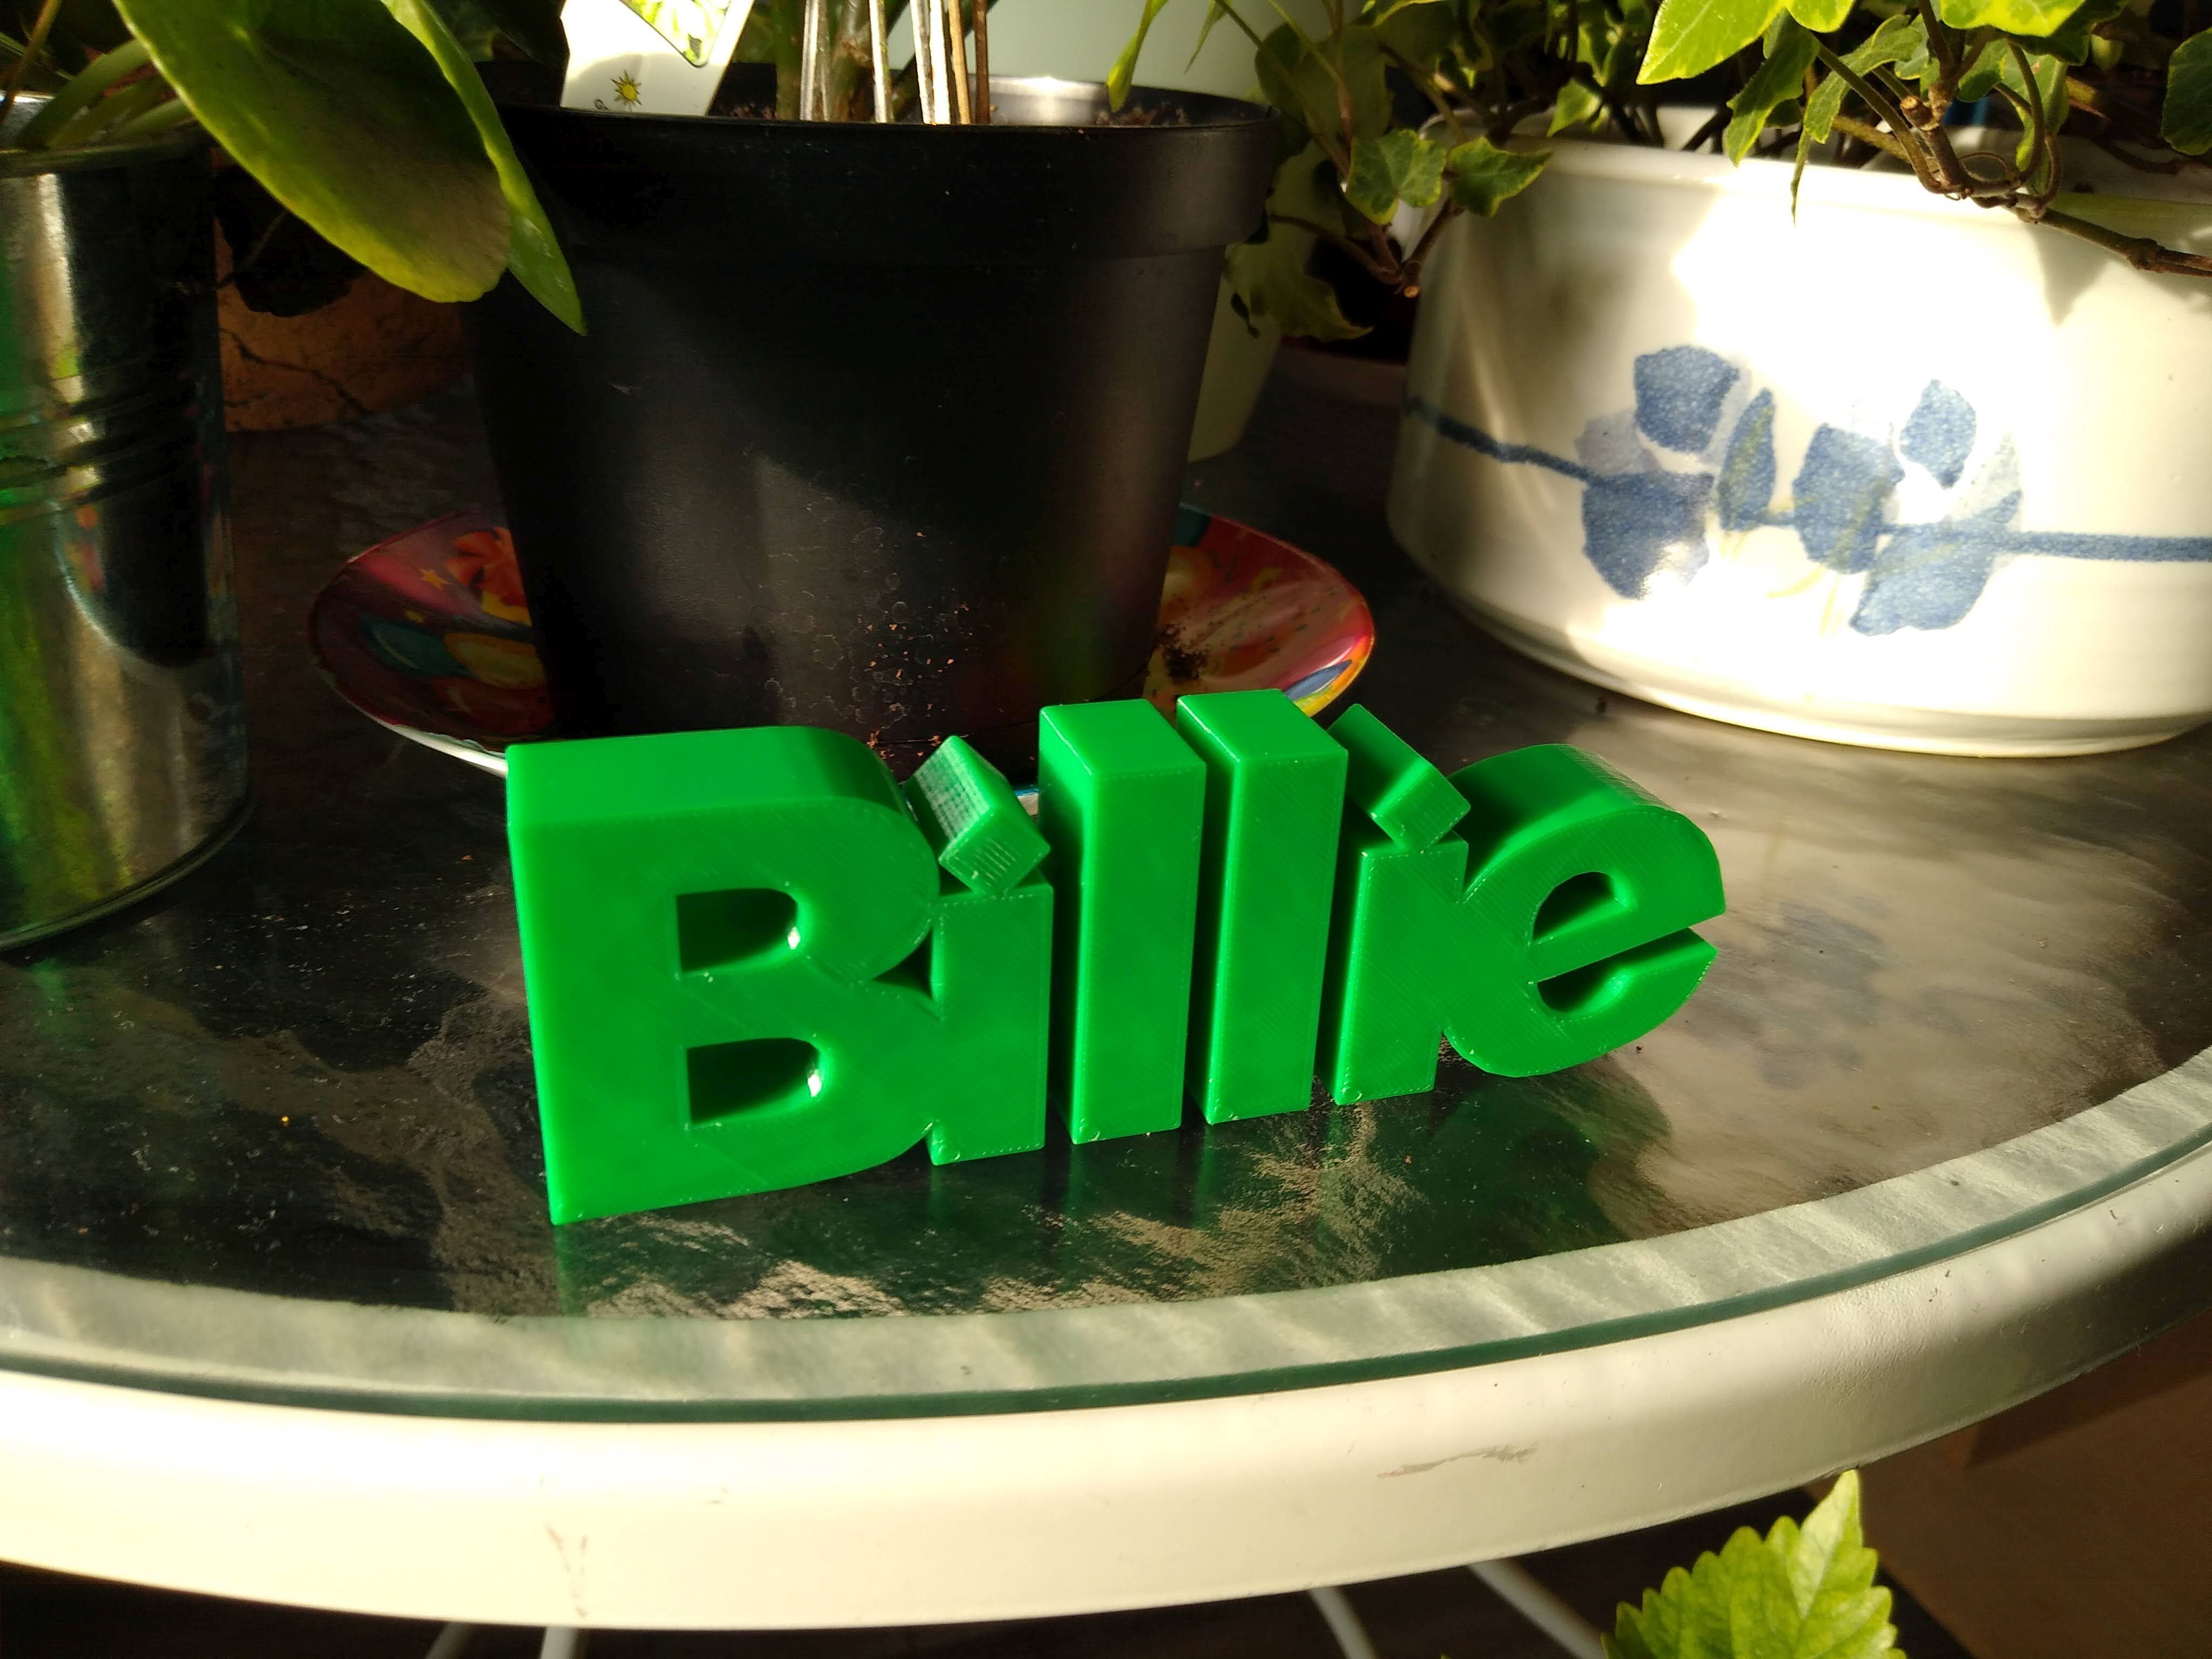 Billie